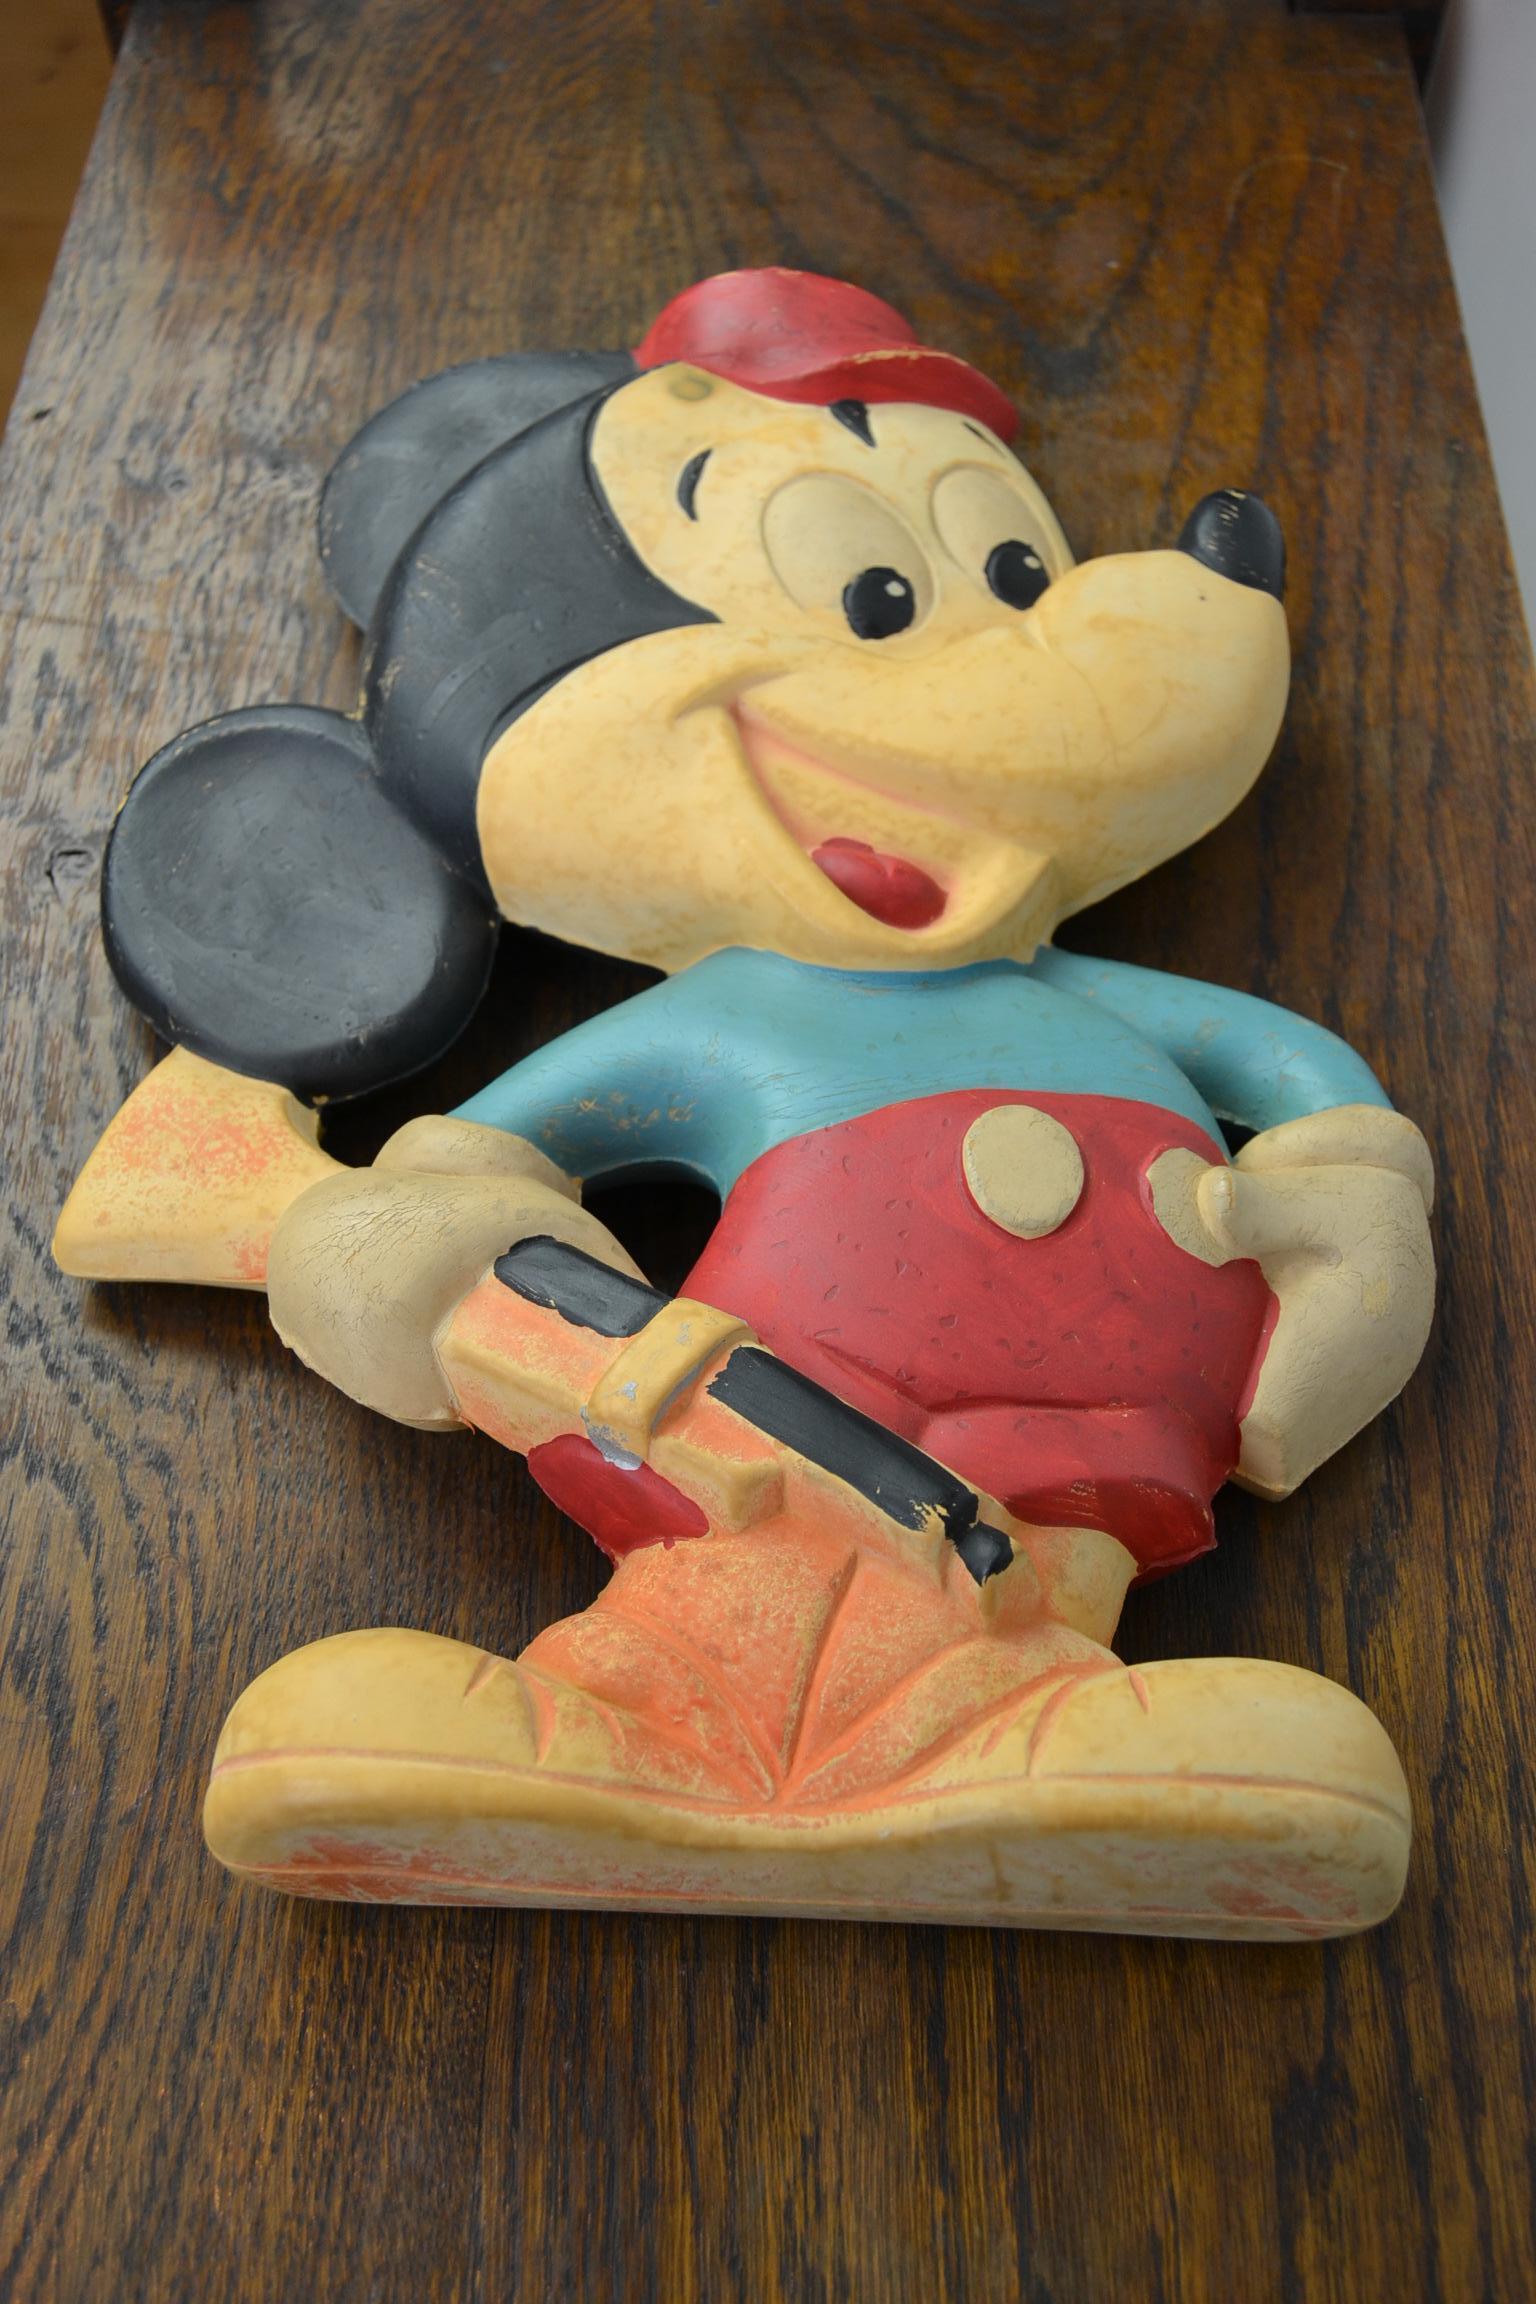 1965 Walt Disney Mickey Mouse Wärmflasche von Duarry Spanien. 
Sammlerstück: Mickey Mouse Wärmflasche aus Gummi mit Originalstopfen.
Diese Mickey Mouse aus der Walt Disney Produktion wurde 1965 in Spanien von Duarry hergestellt.
Die Walt